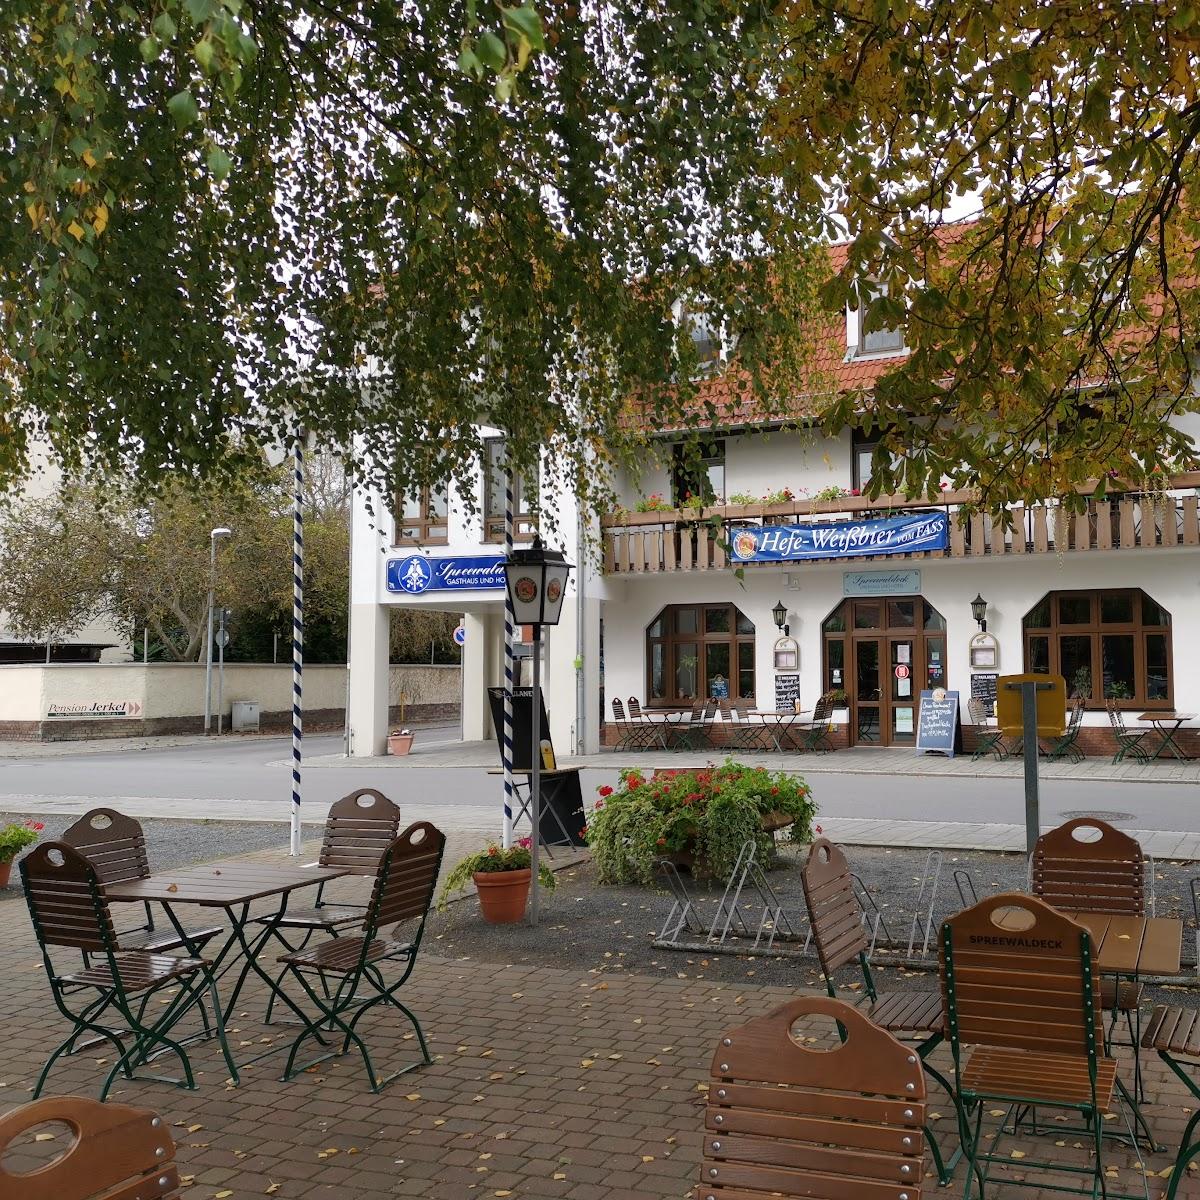 Restaurant "Gasthaus und Hotel Spreewaldeck Geschwister Noack oHG" in Lübbenau-Spreewald